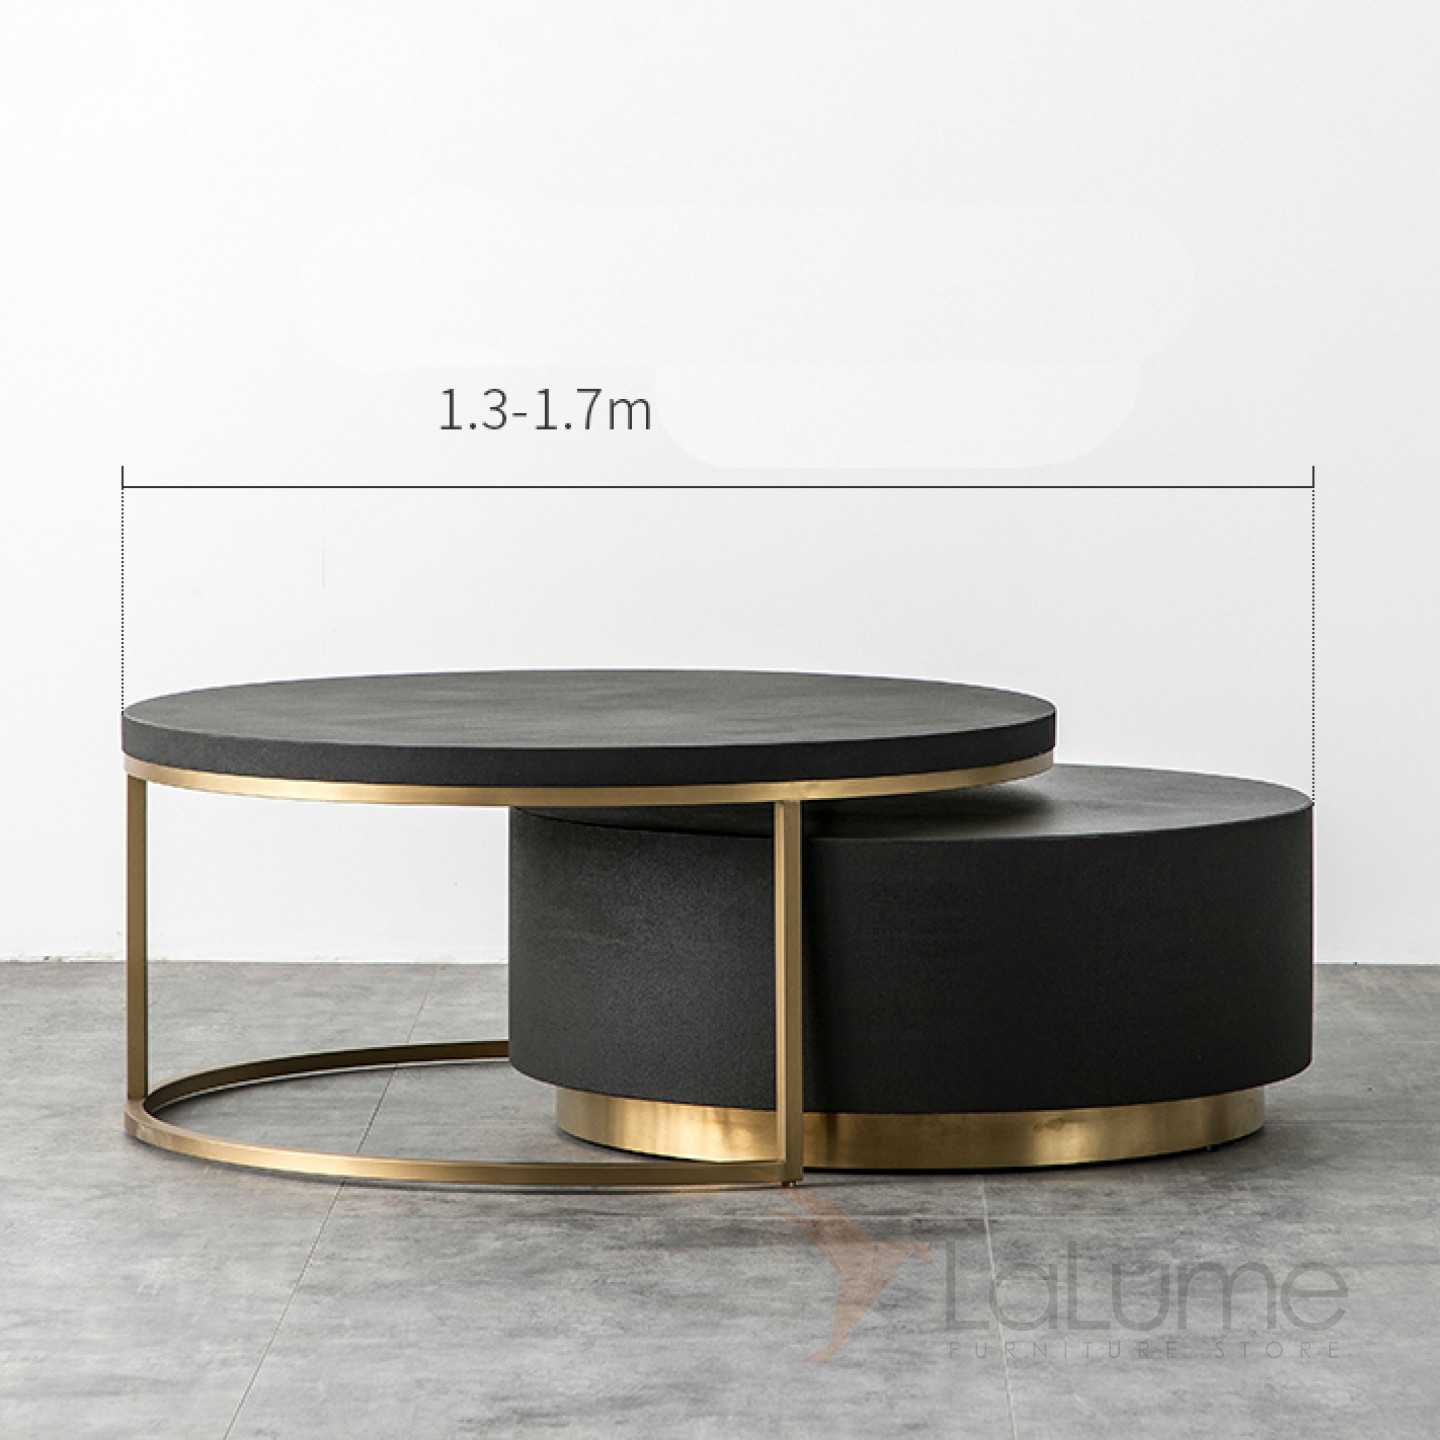 Дизайнерские столы — красивая эксклюзивная мебель на 40 фото